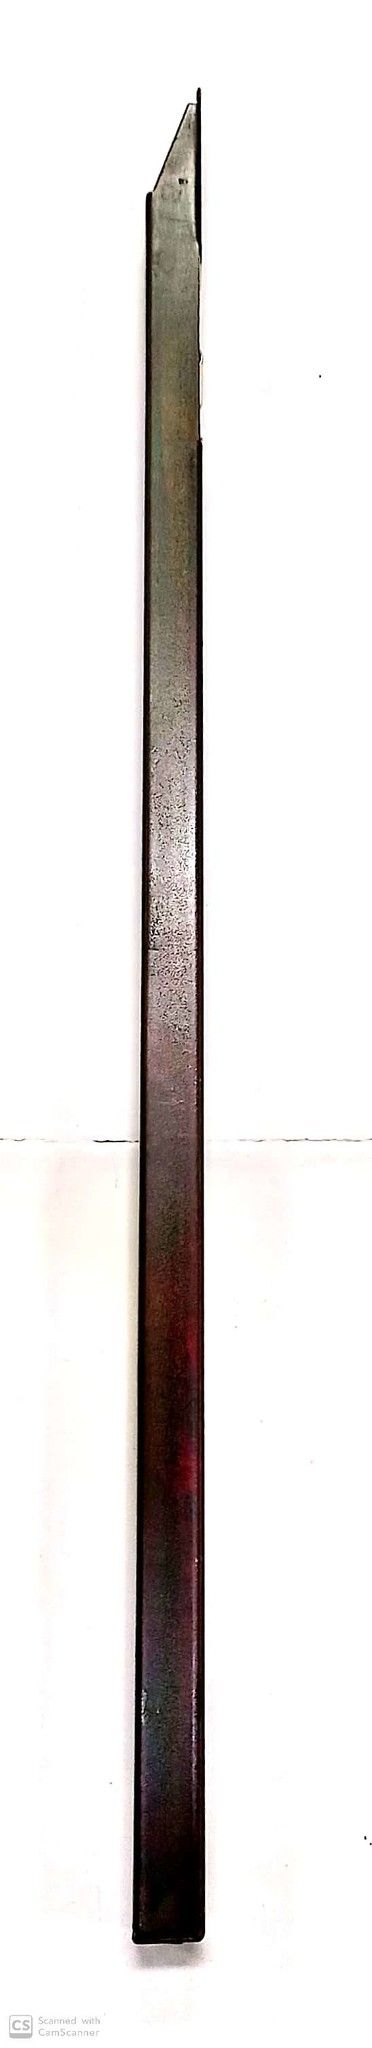 Catenaccio a pulsante cm 40 in ferro bronzato AGB 310